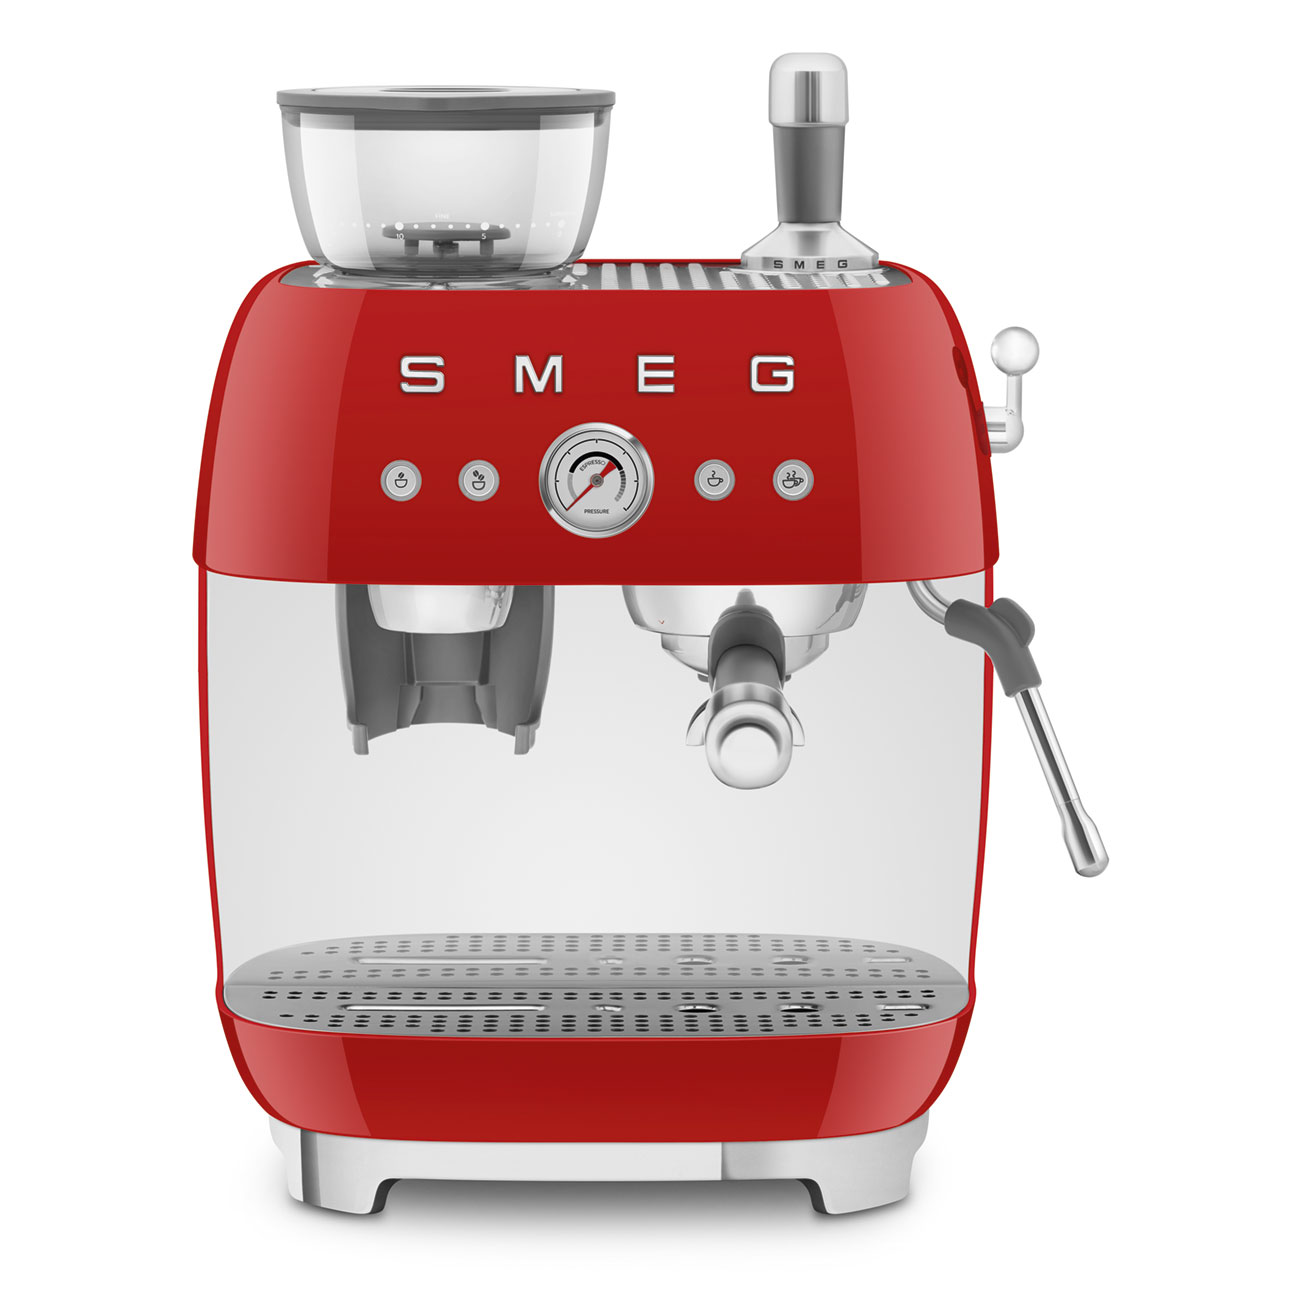 Smeg Rouge Machine à café expresso manuelle avec broyeur à grain intégré_1